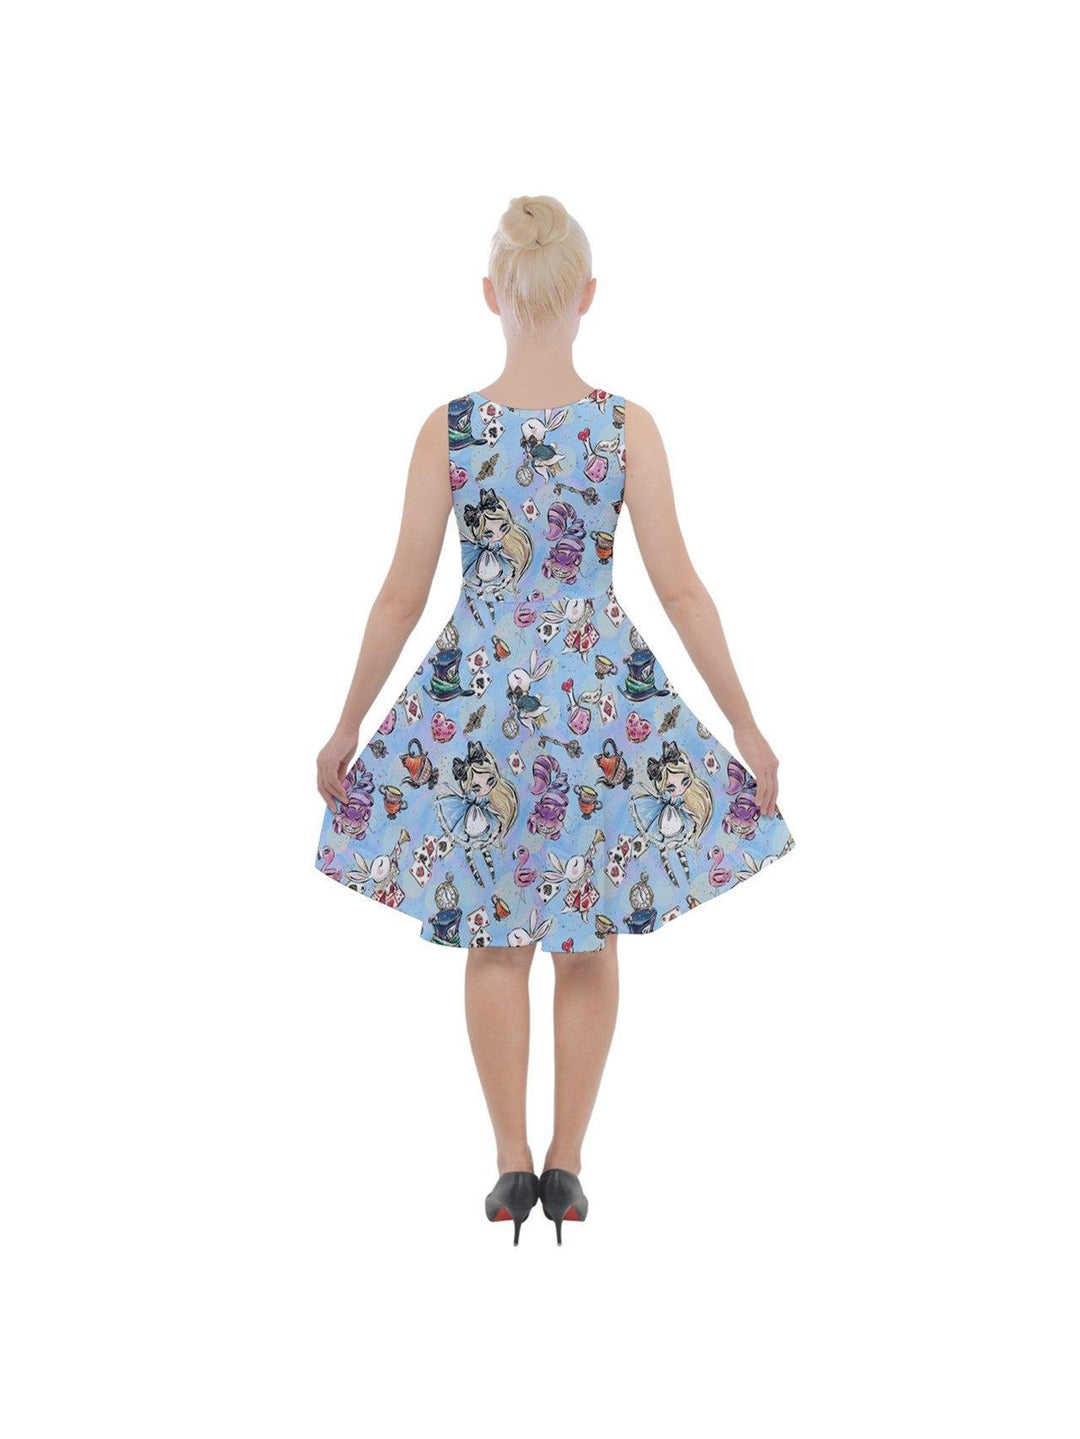 Alice in Wonderland Knee Length Skater Dress With Pockets